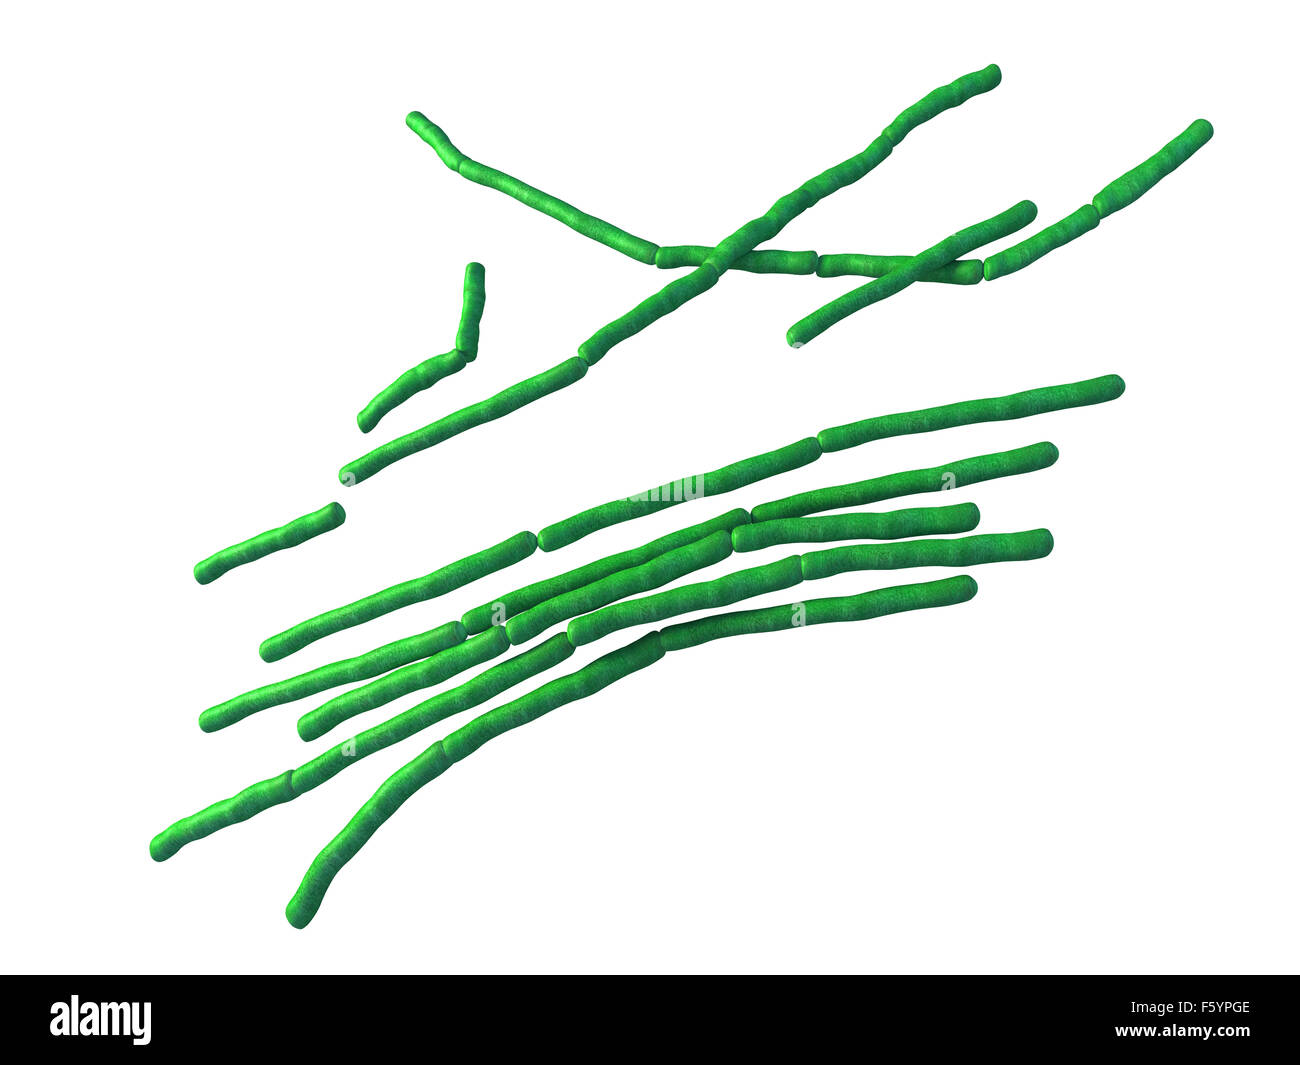 Les bactéries médicales illustration des Bacillus cereus Banque D'Images